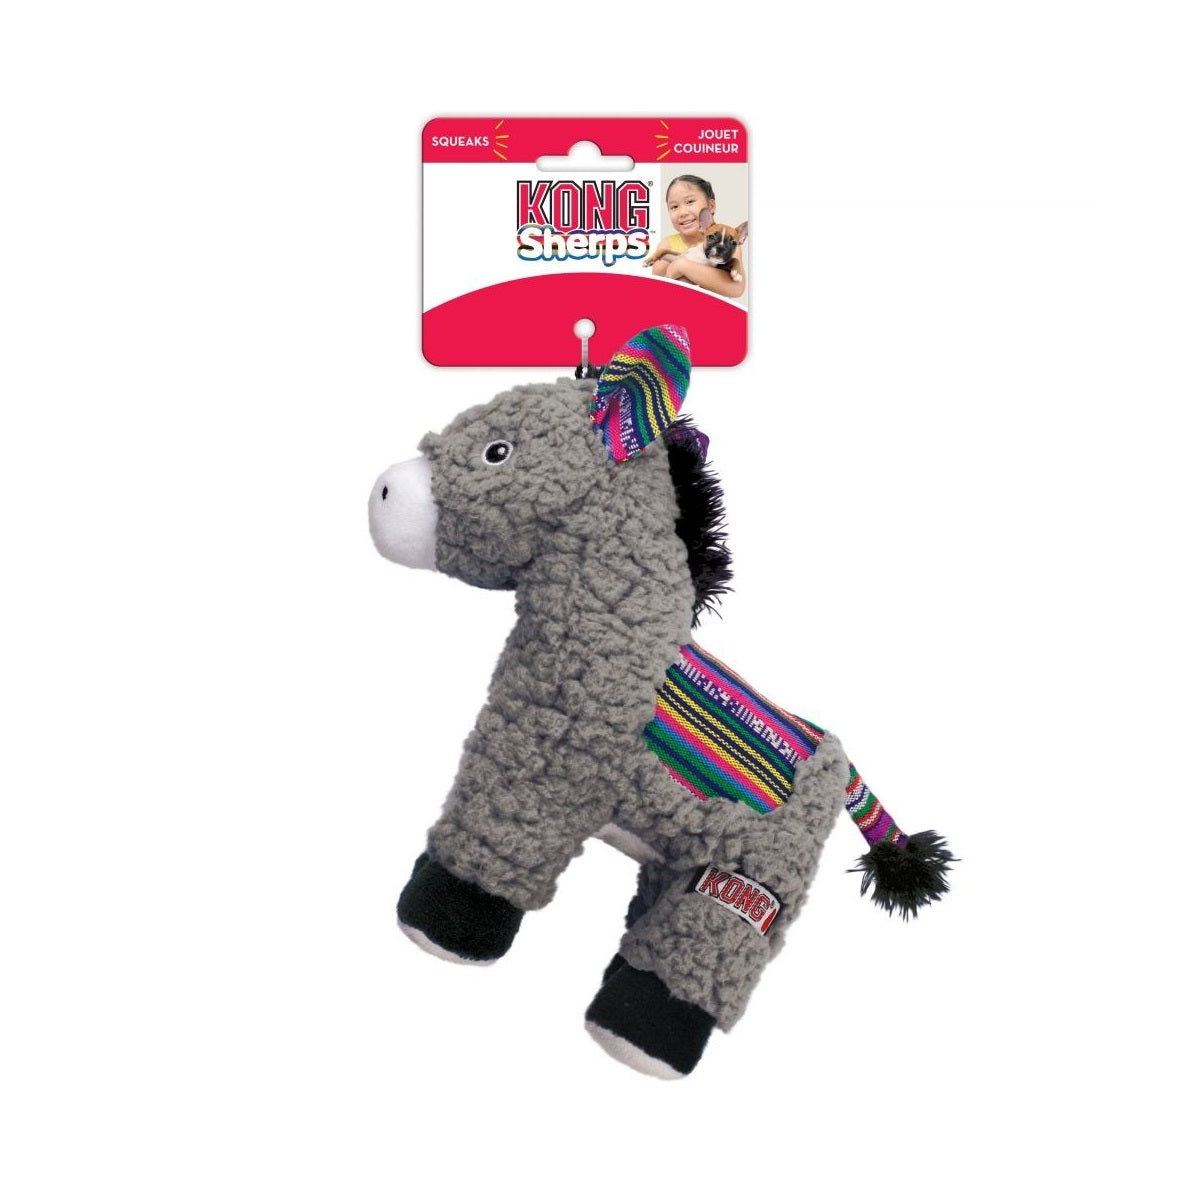 KONG Sherps Donkey Dog Toy